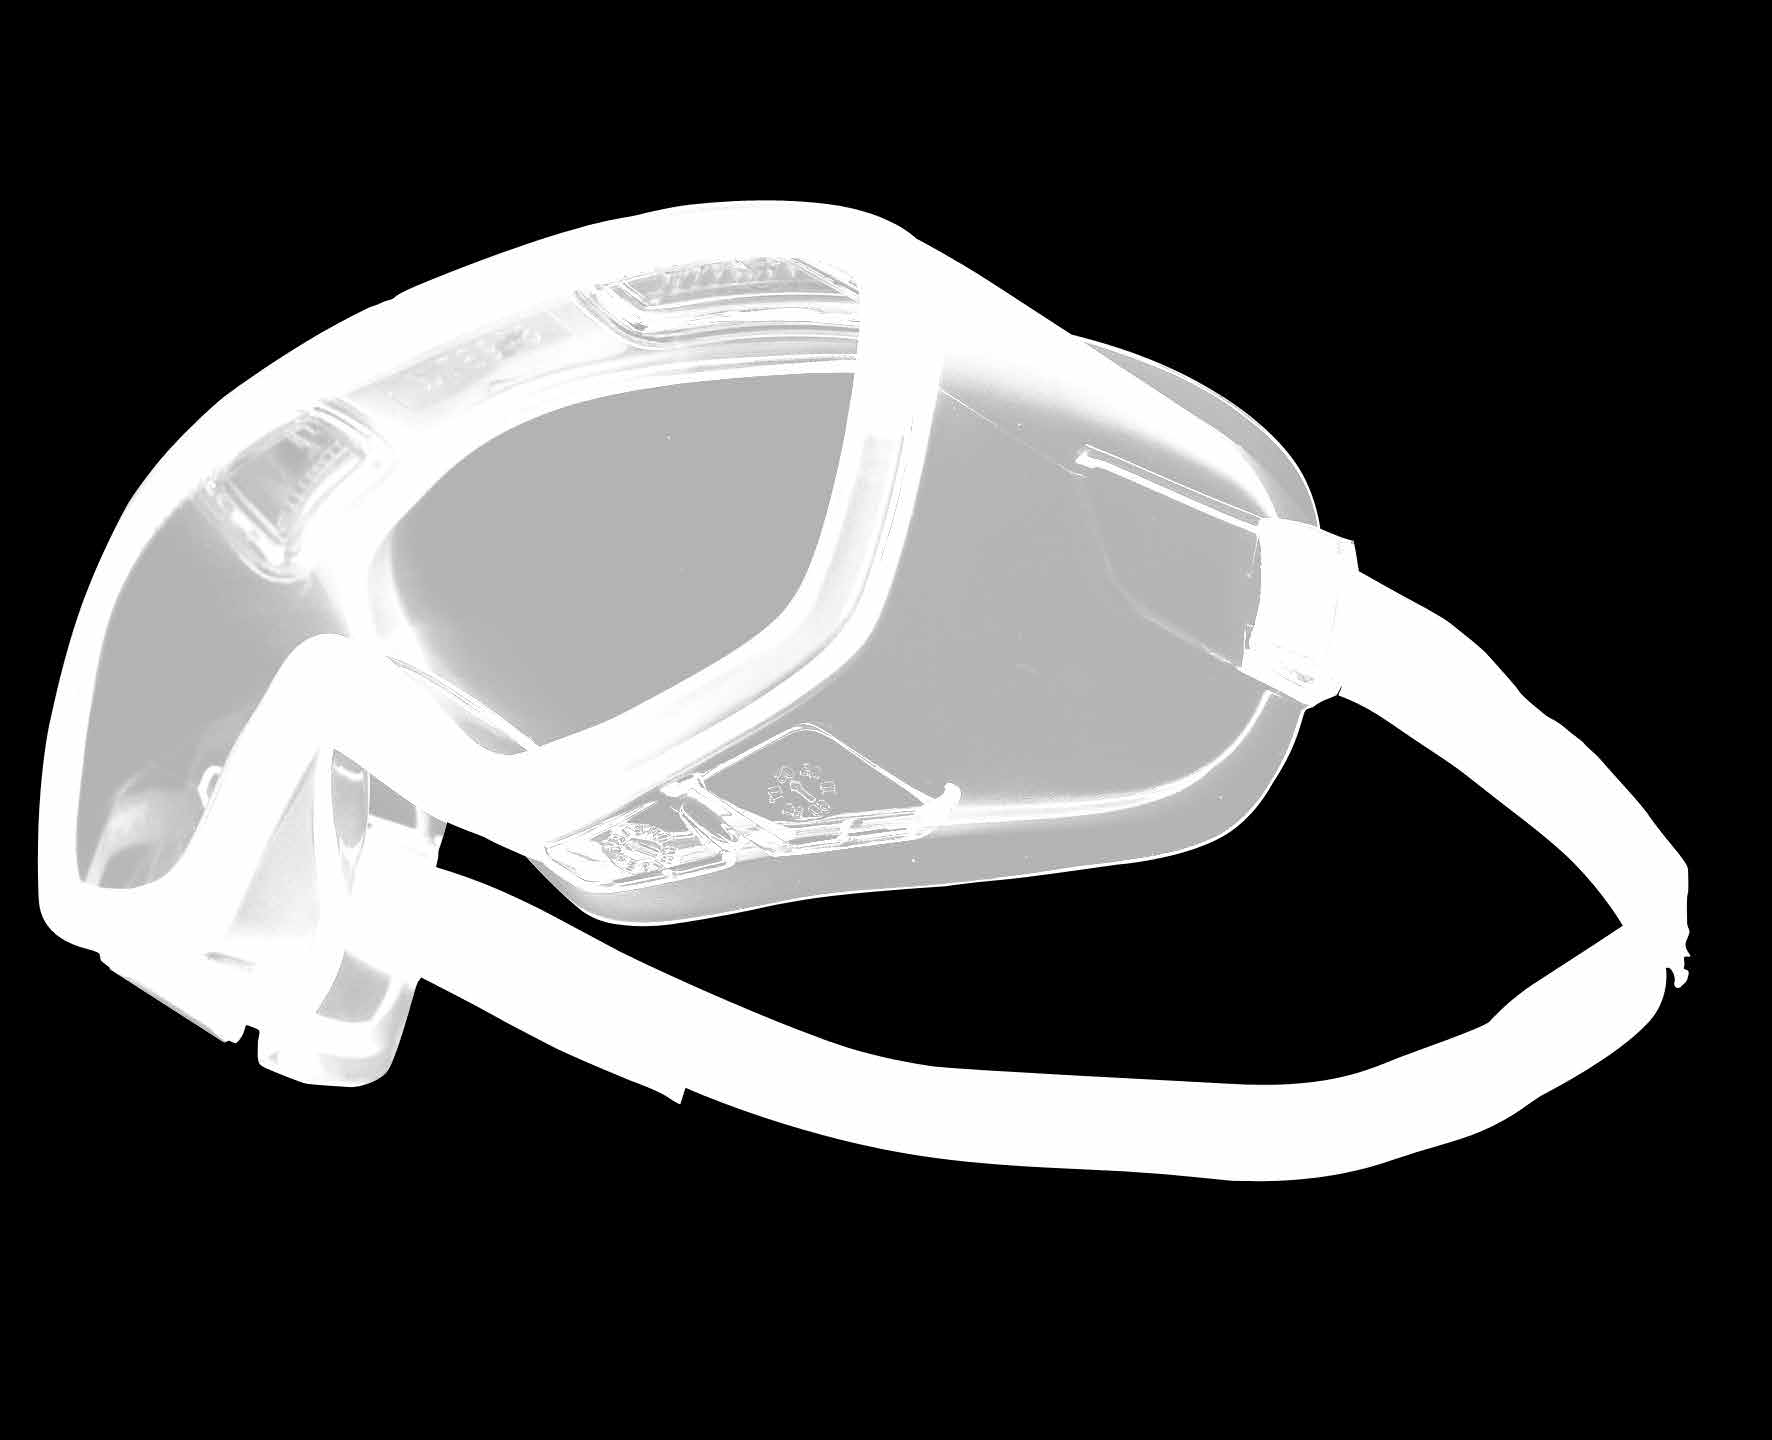 51 VOLLSICHT-SCHUTZBRILLEN COVERALL ZweckmäSSig und effizient Vielseitige Vollsichtschutzbrille für Träger von Korrekturbrillen.